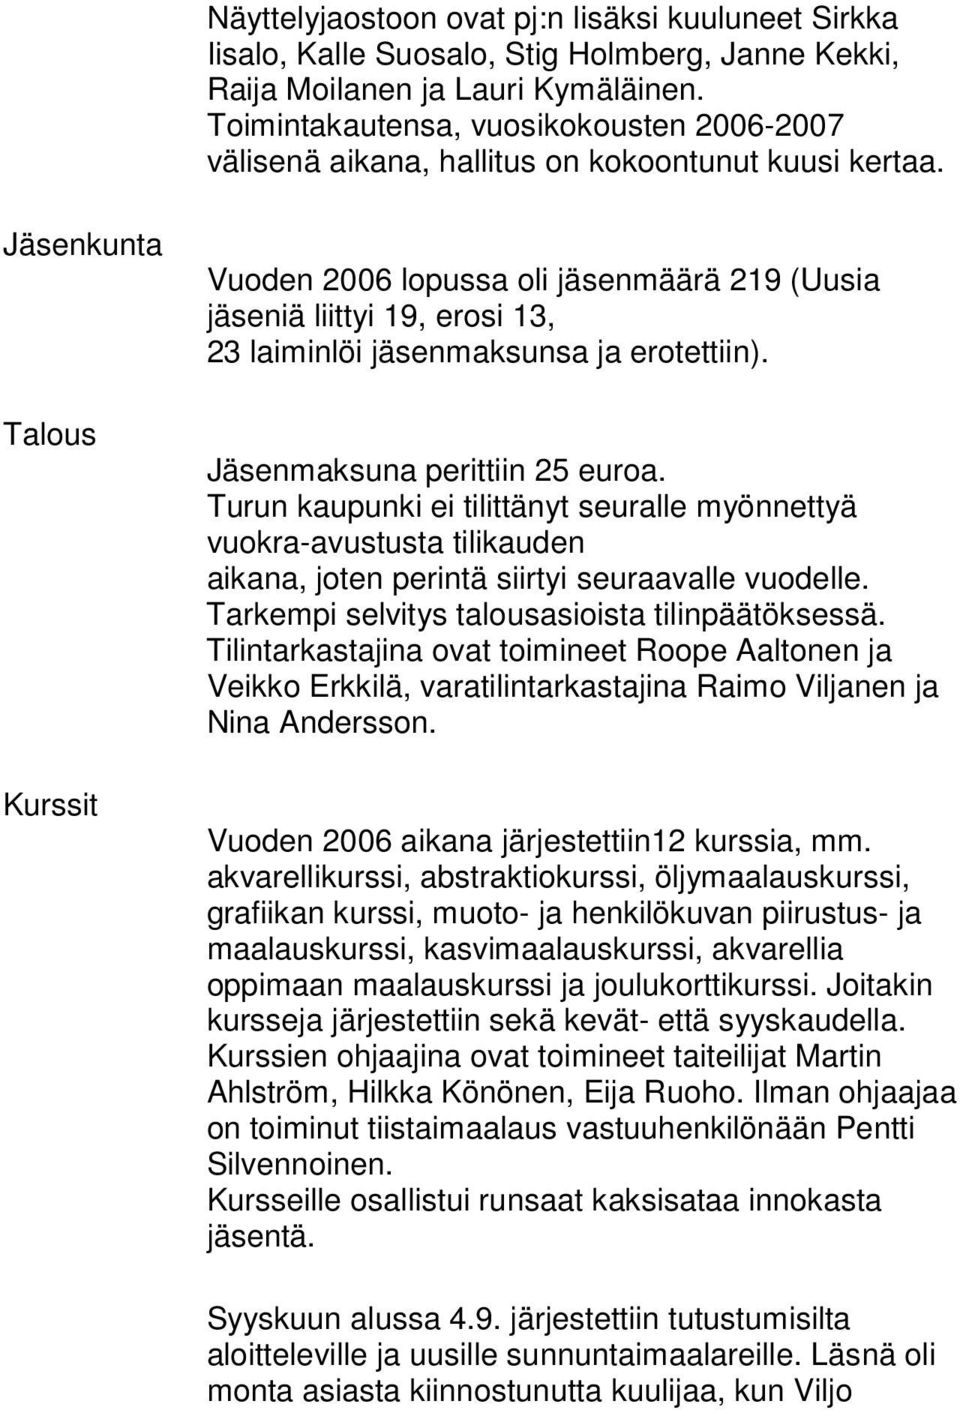 Jäsenkunta Talous Kurssit Vuoden 2006 lopussa oli jäsenmäärä 219 (Uusia jäseniä liittyi 19, erosi 13, 23 laiminlöi jäsenmaksunsa ja erotettiin). Jäsenmaksuna perittiin 25 euroa.